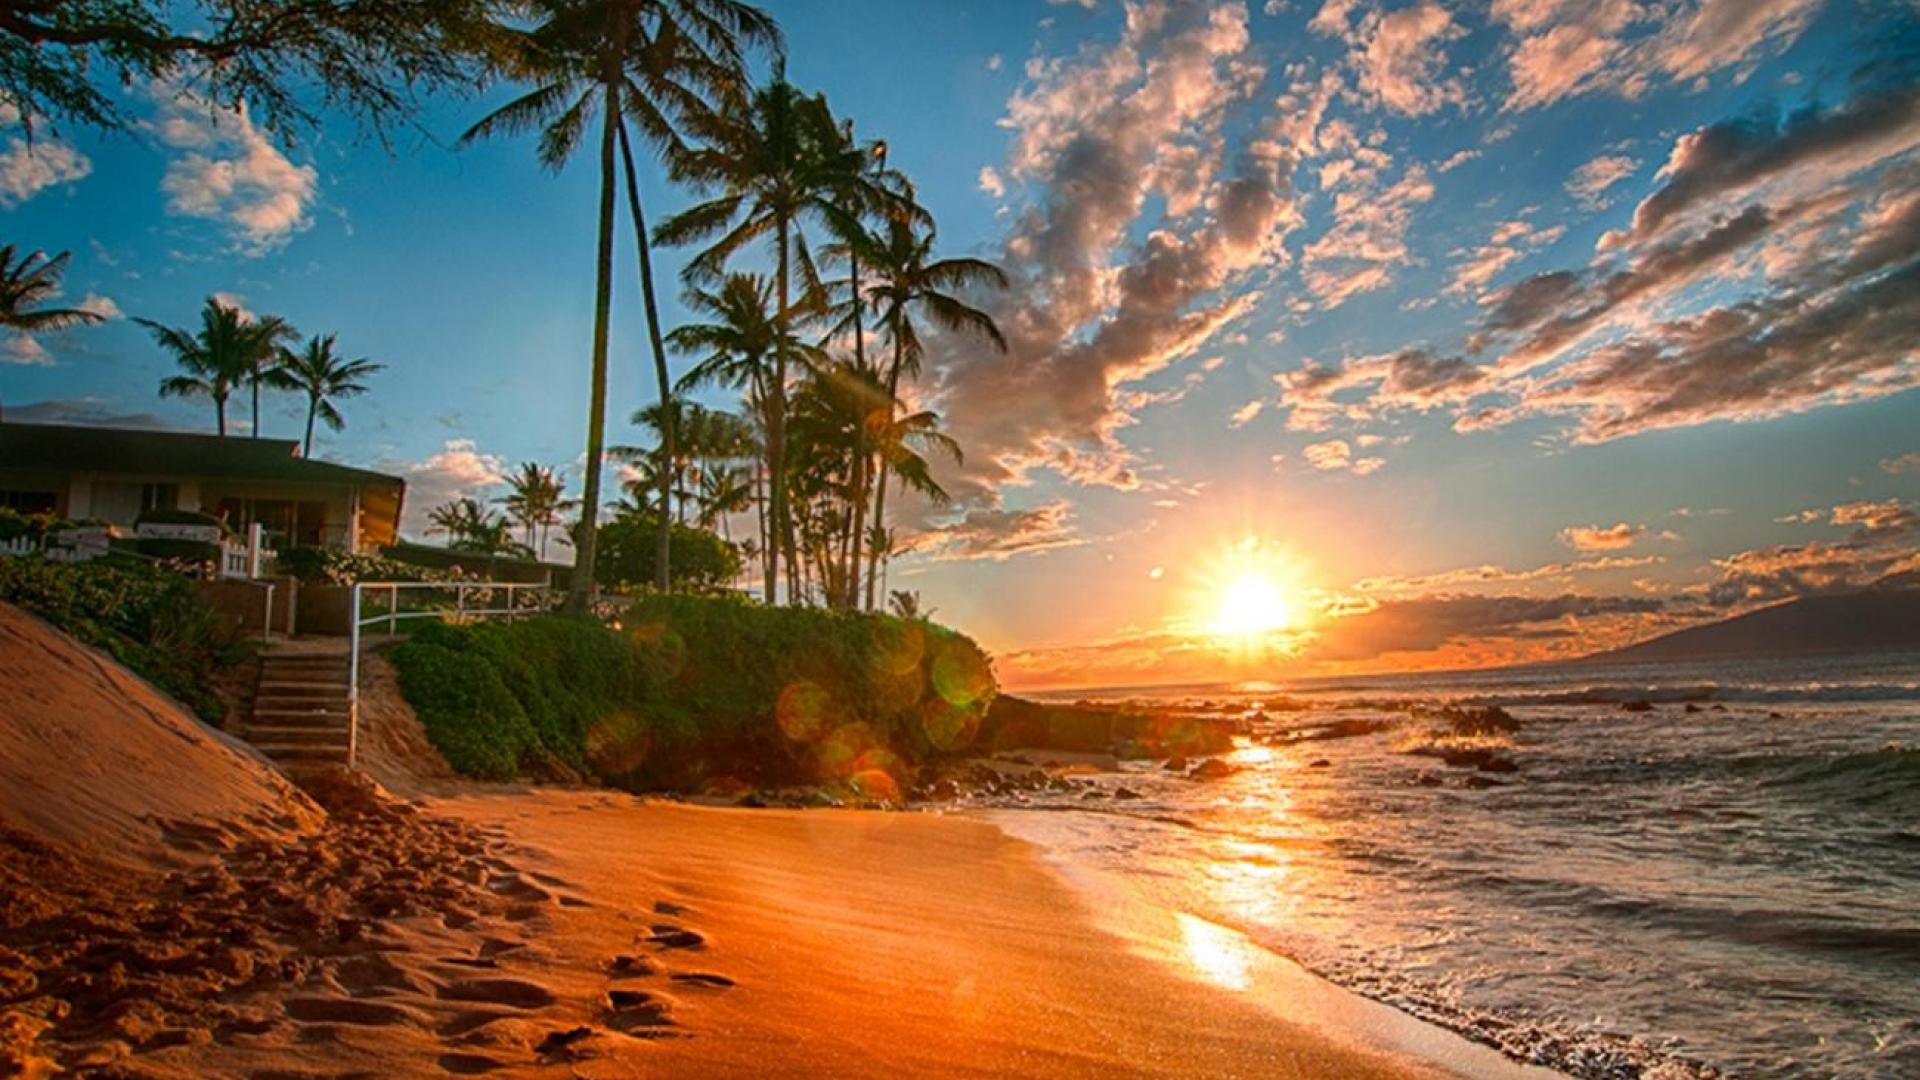 ハワイのデスクトップの壁紙,空,自然,岸,木,ヤシの木